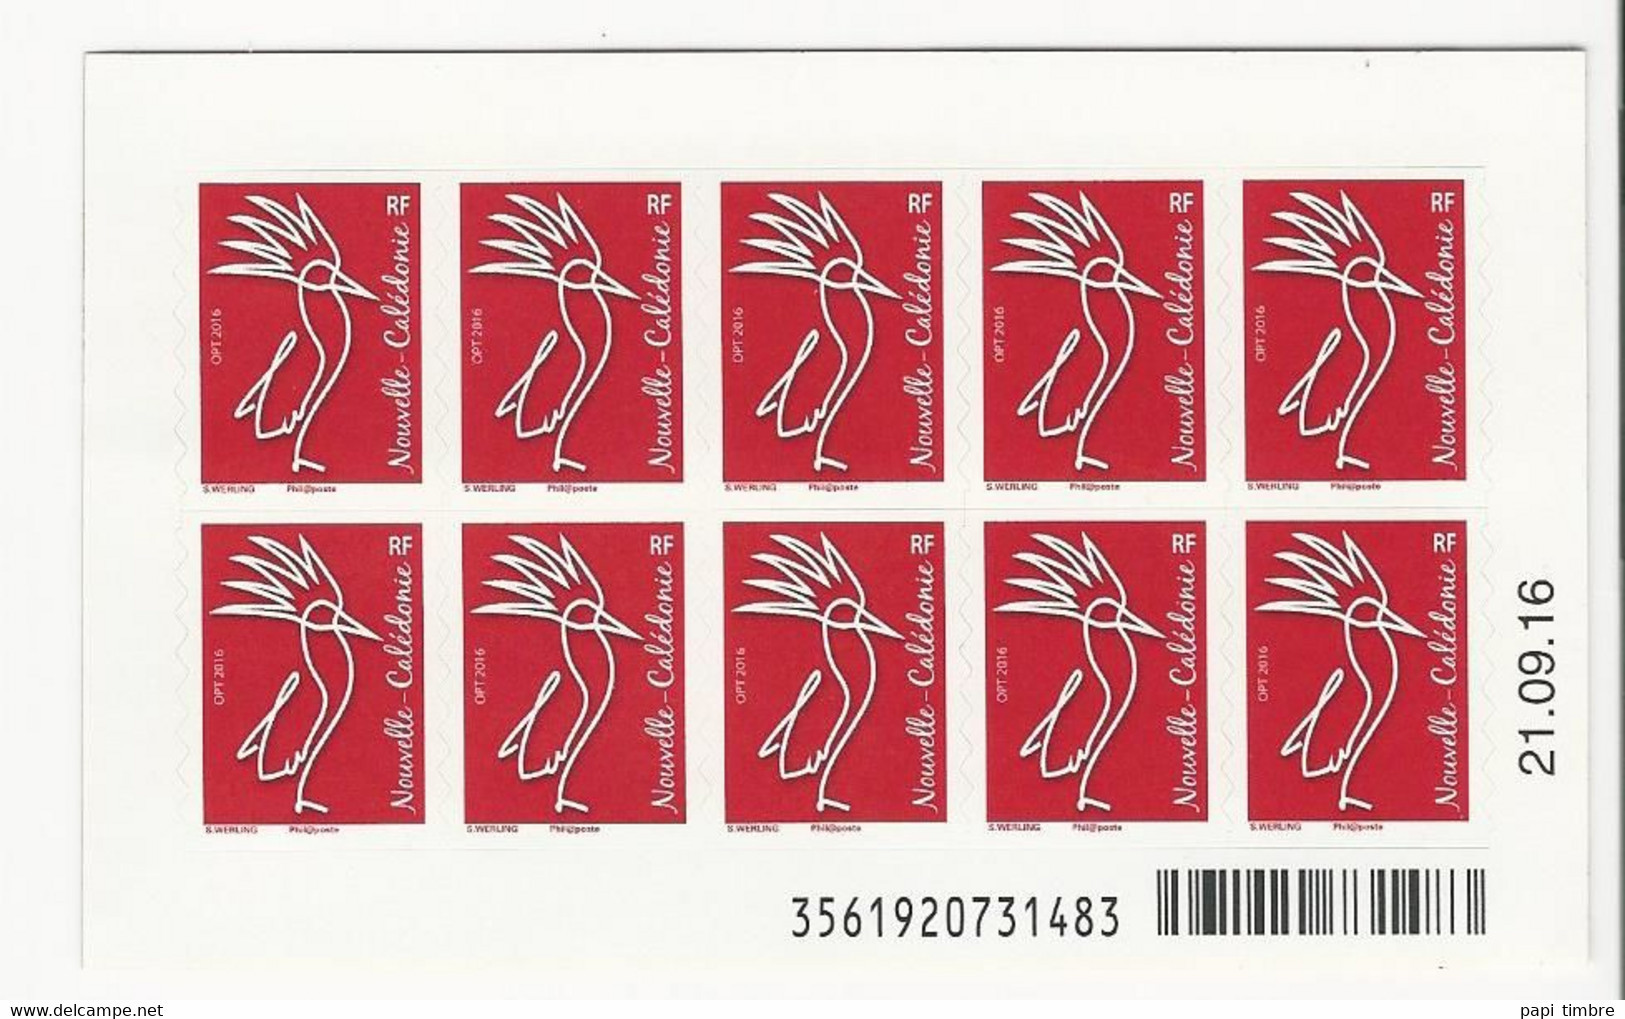 Nlle Calédonie - 2016 - Série Courante-Le Cagou - C1289 ** - Postzegelboekjes